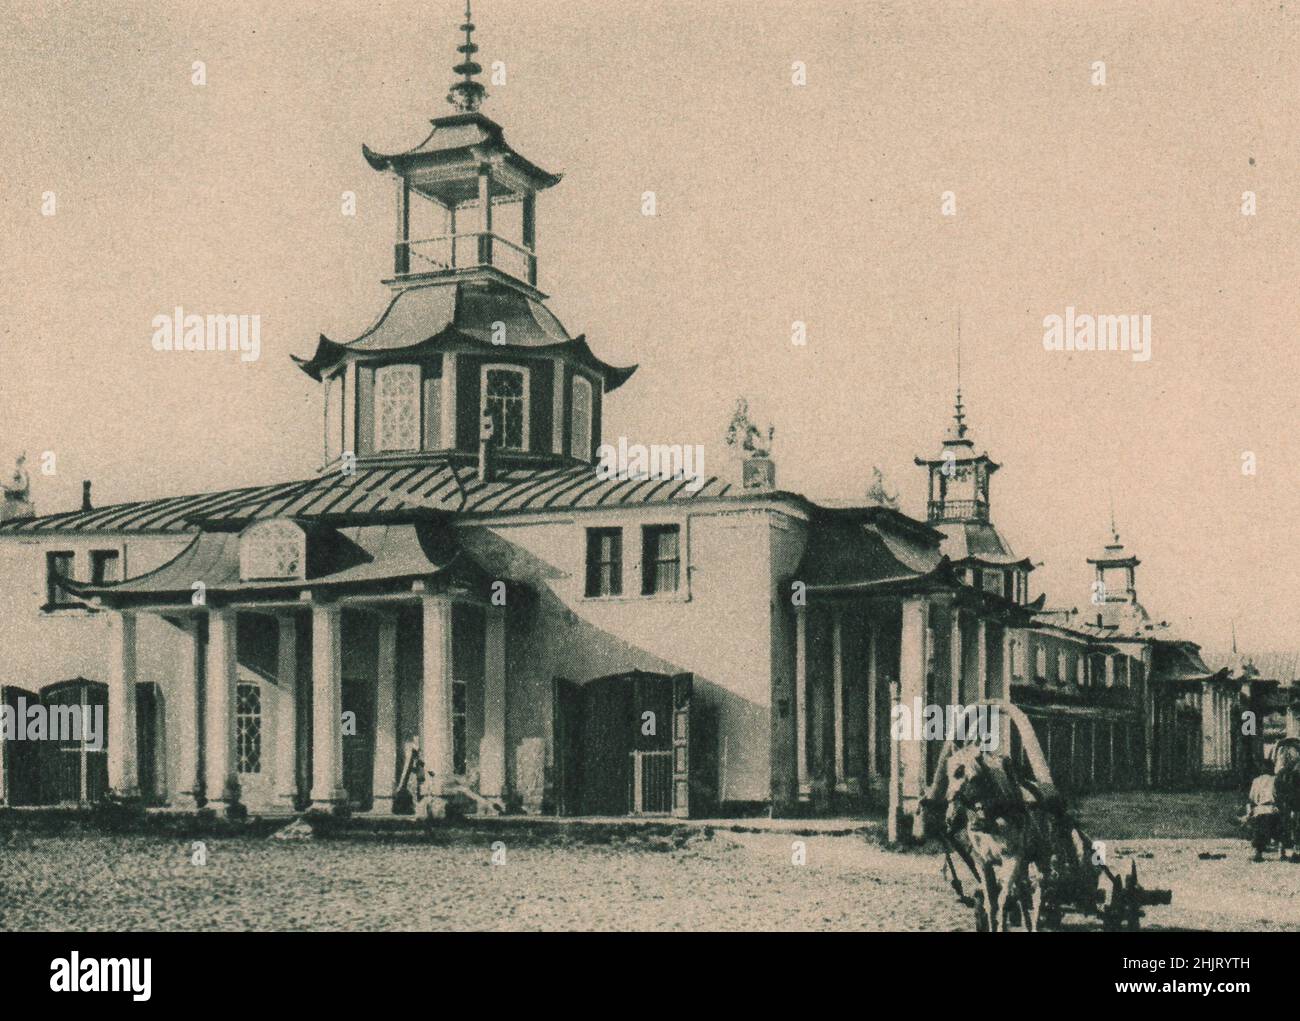 Los aleros curvos sobre este edificio en el Spasskaya Ploshchad en Khabarovsk muestran una fuerte influencia mongola en su arquitectura. Rusia. Siberia (1923) Foto de stock